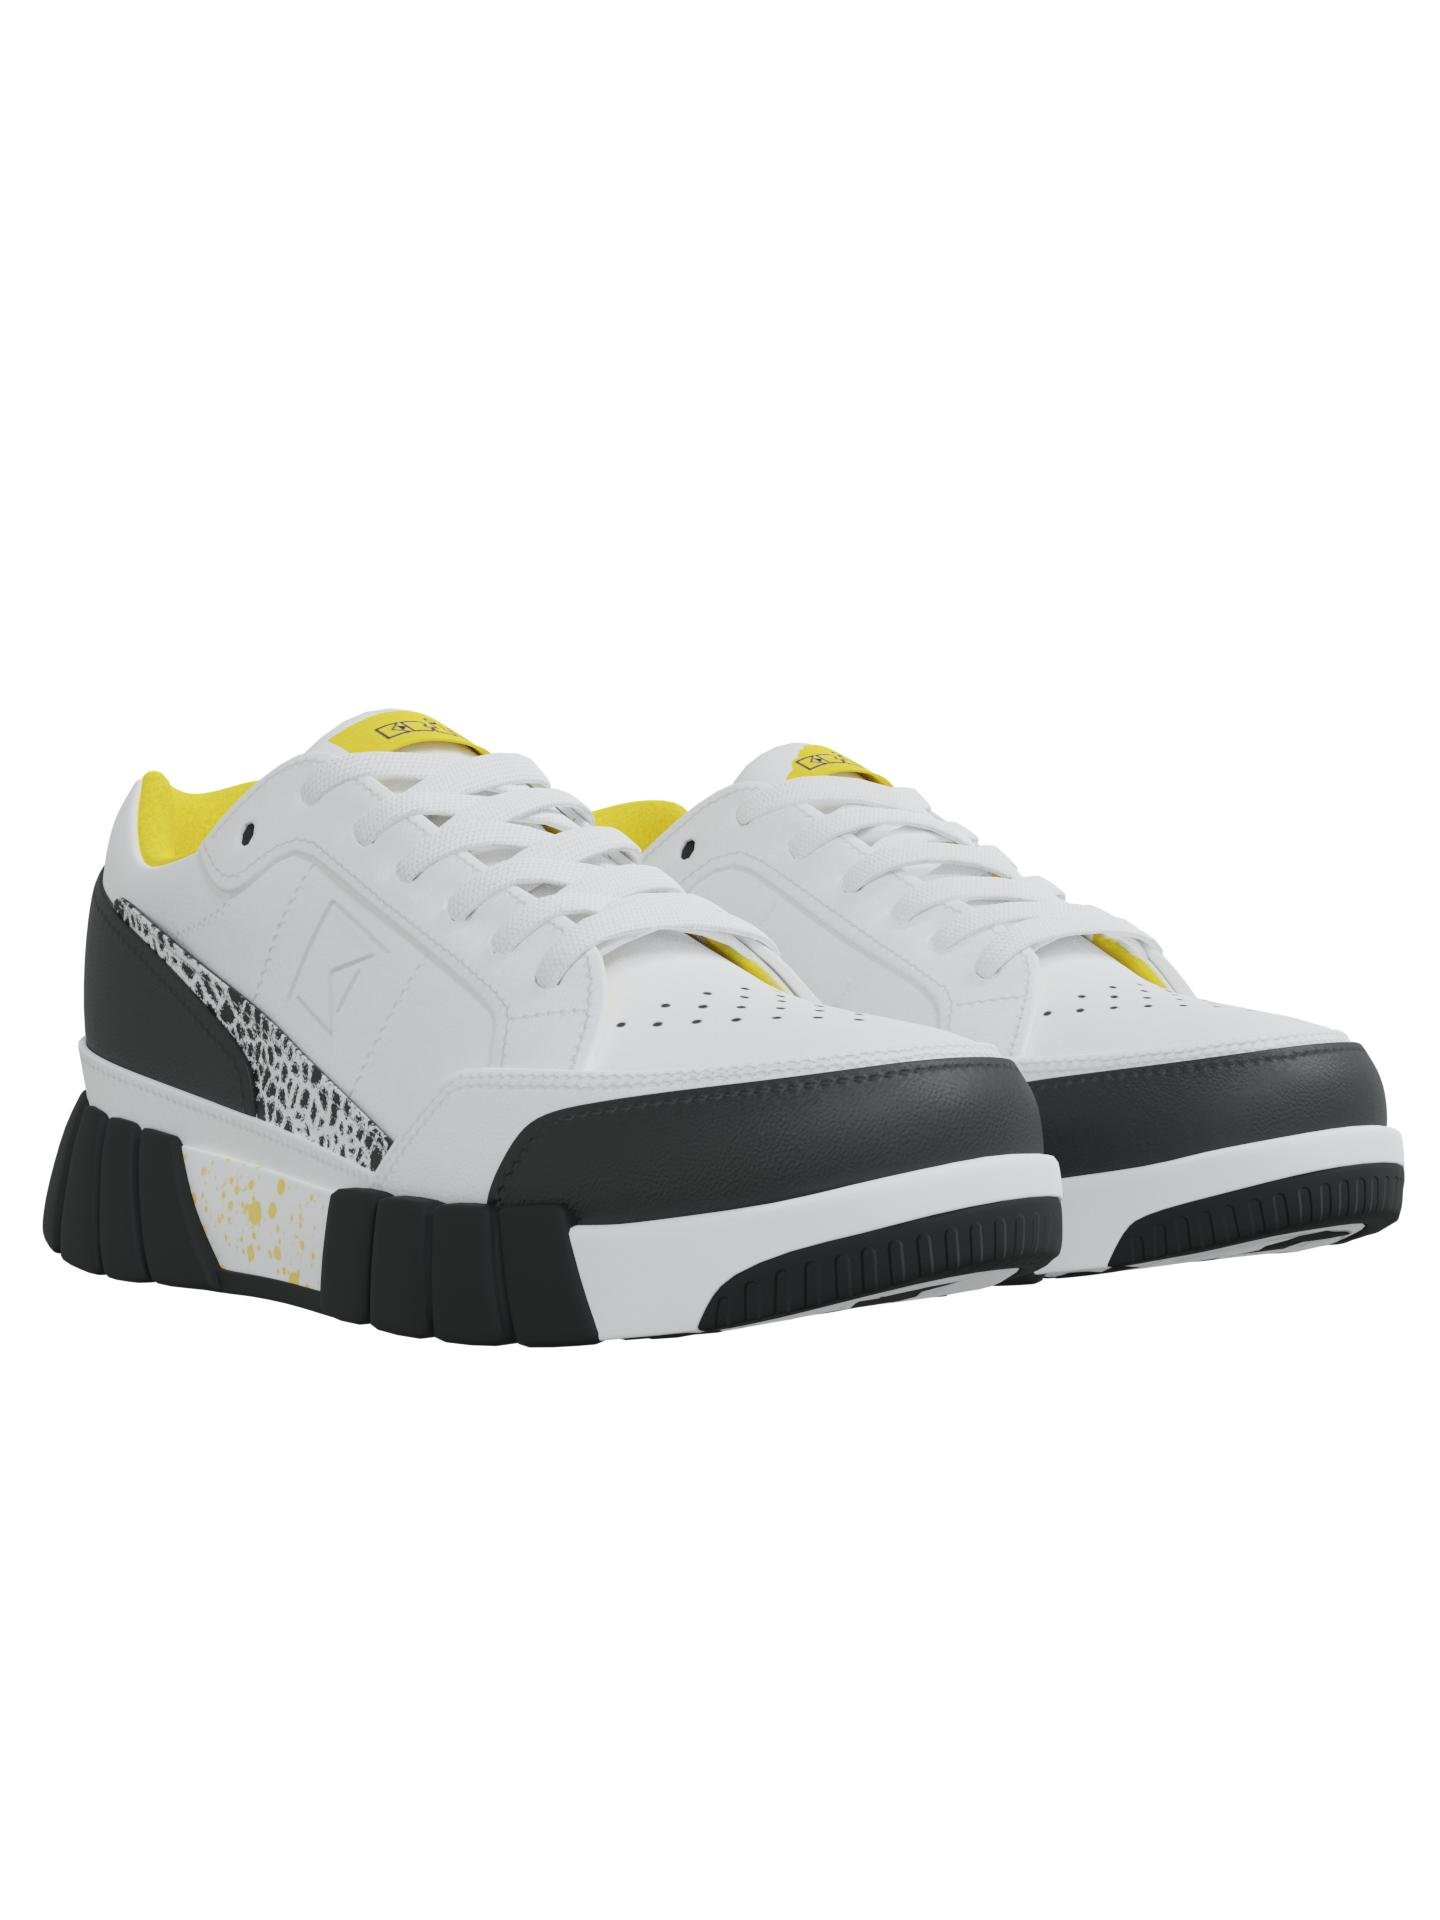 E010c 80s Vibe Low-Top Sneaker by EBIT